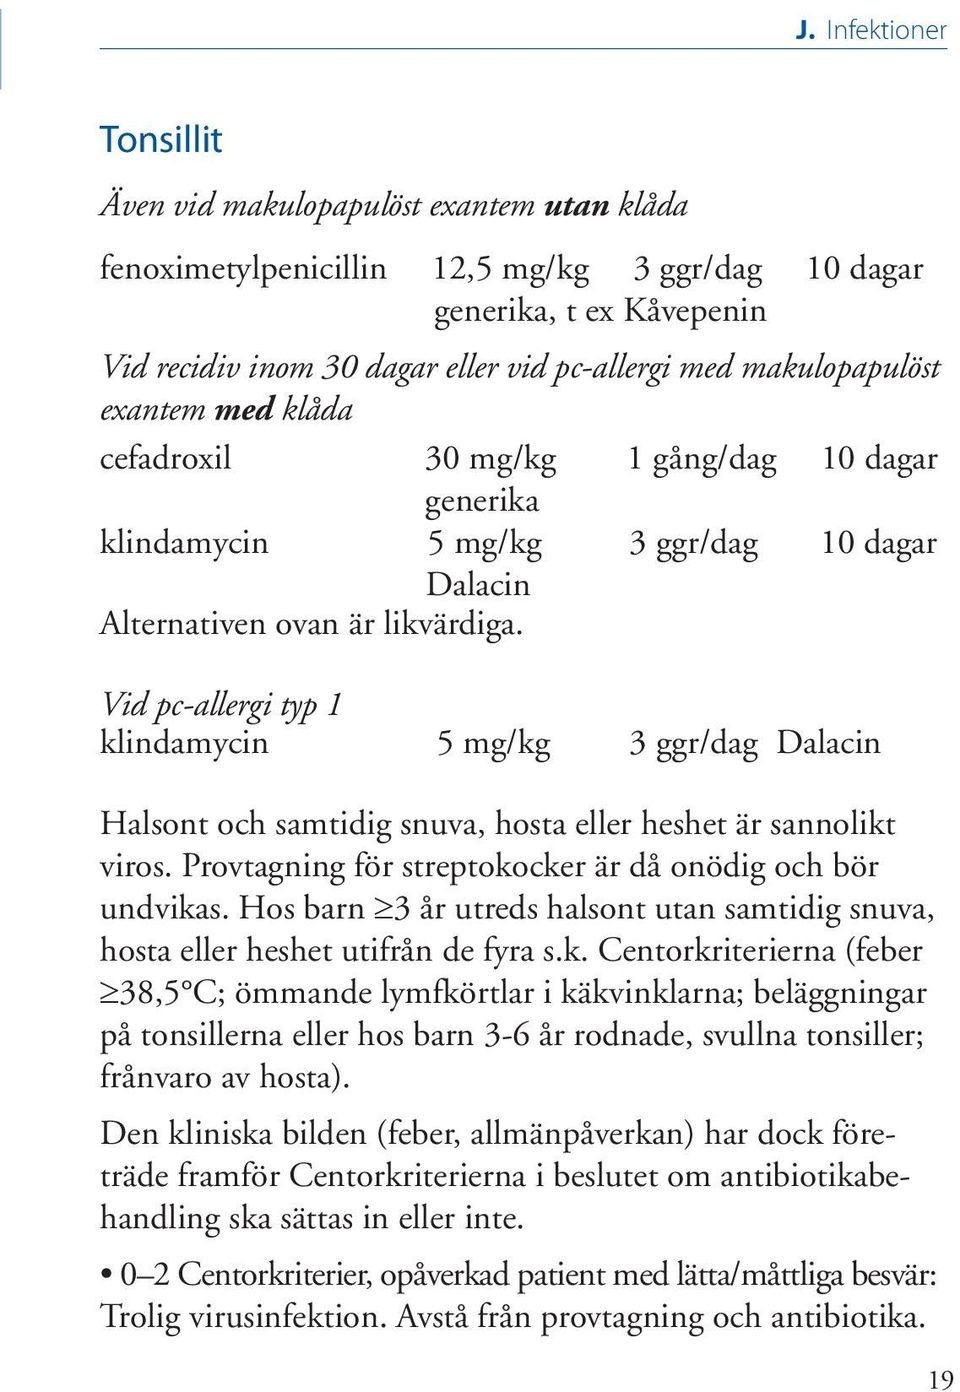 Vid pc-allergi typ 1 klindamycin 5 mg/kg 3 ggr/dag Dalacin Halsont och samtidig snuva, hosta eller heshet är sannolikt viros. Provtagning för streptokocker är då onödig och bör undvikas.